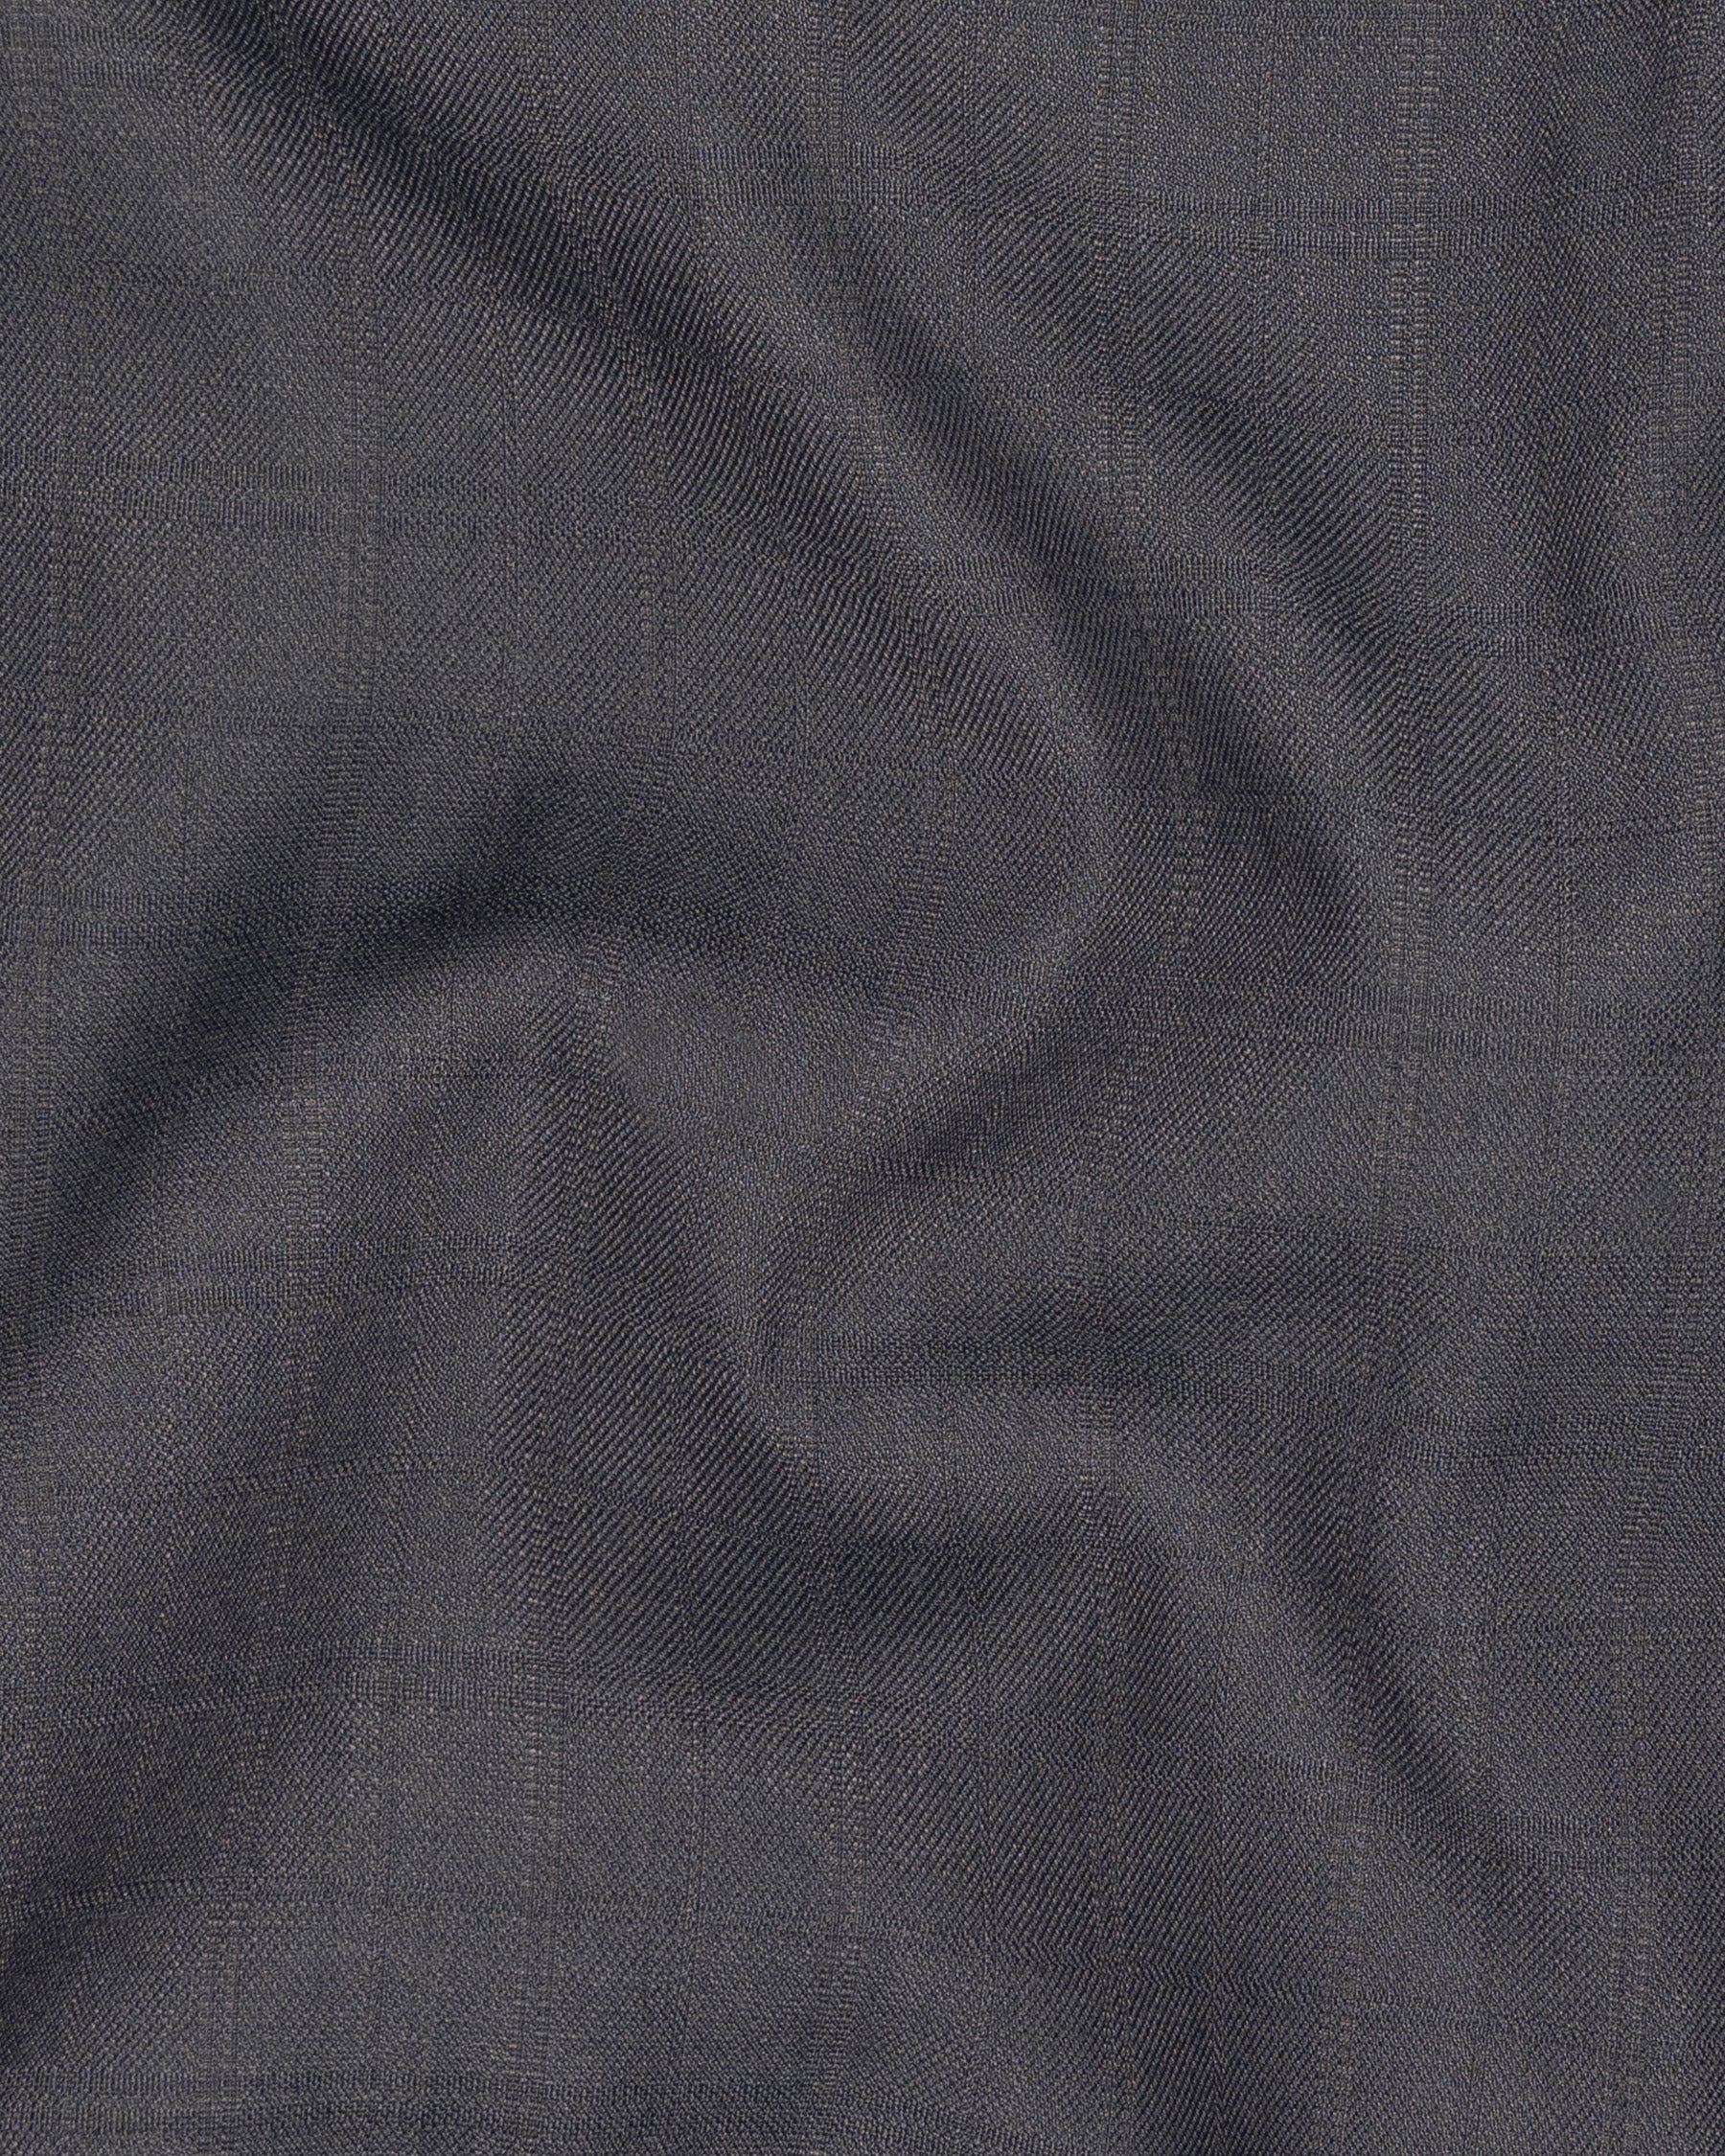 Mulled grey subtle Plaid Wool Rich Pant T1479-28, T1479-30, T1479-32, T1479-34, T1479-36, T1479-38, T1479-40, T1479-42, T1479-44